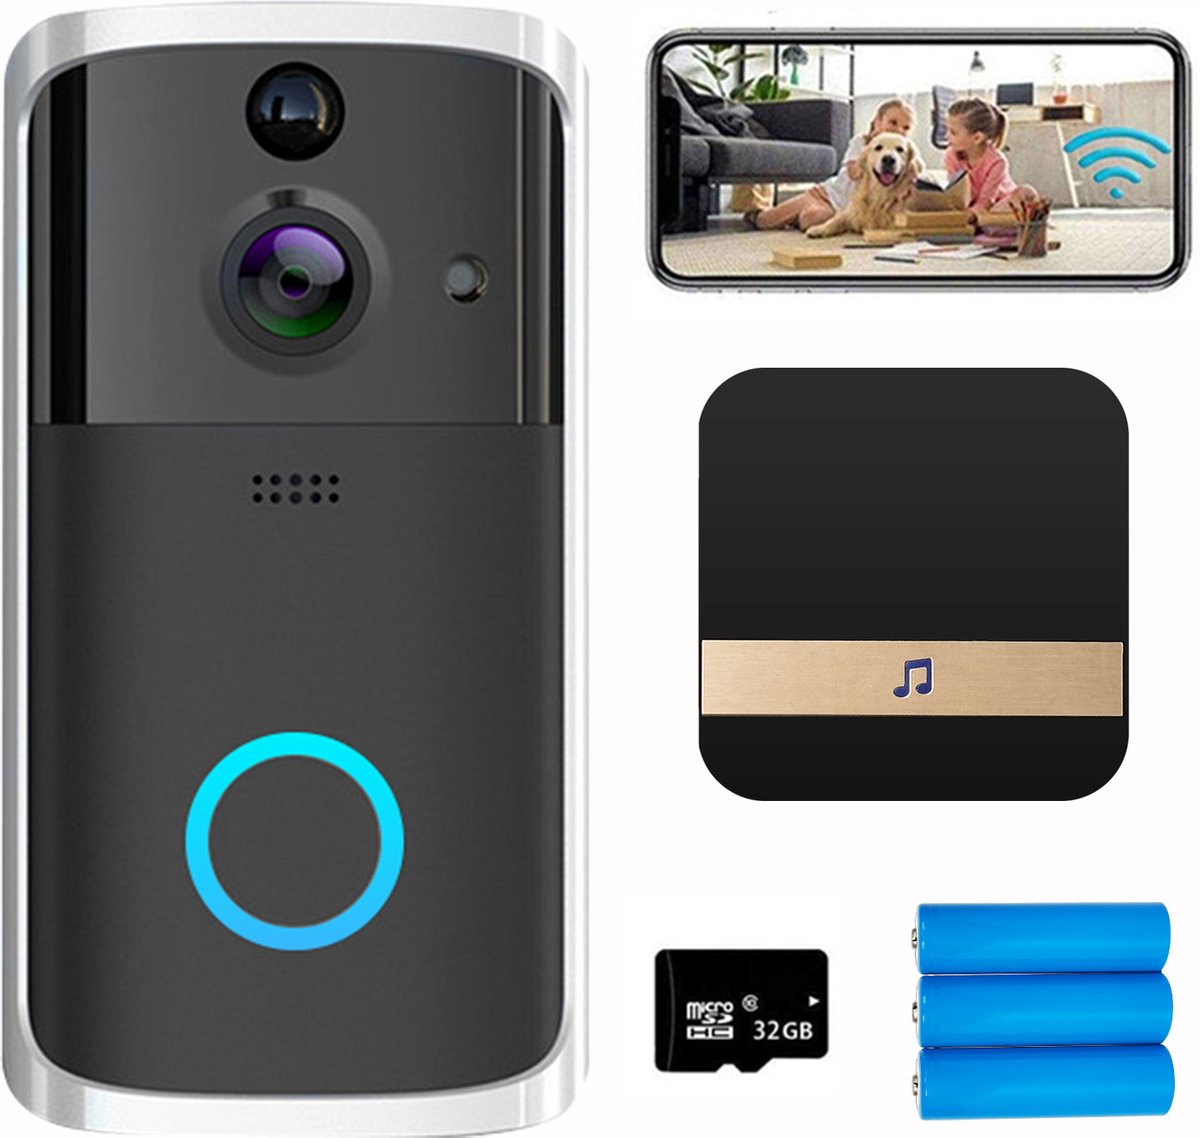 LBP Video deurbel met HD camera en wifi - zwart - draadloos - met gong, 3 oplaadbare batterijen en 32GB geheugenkaart